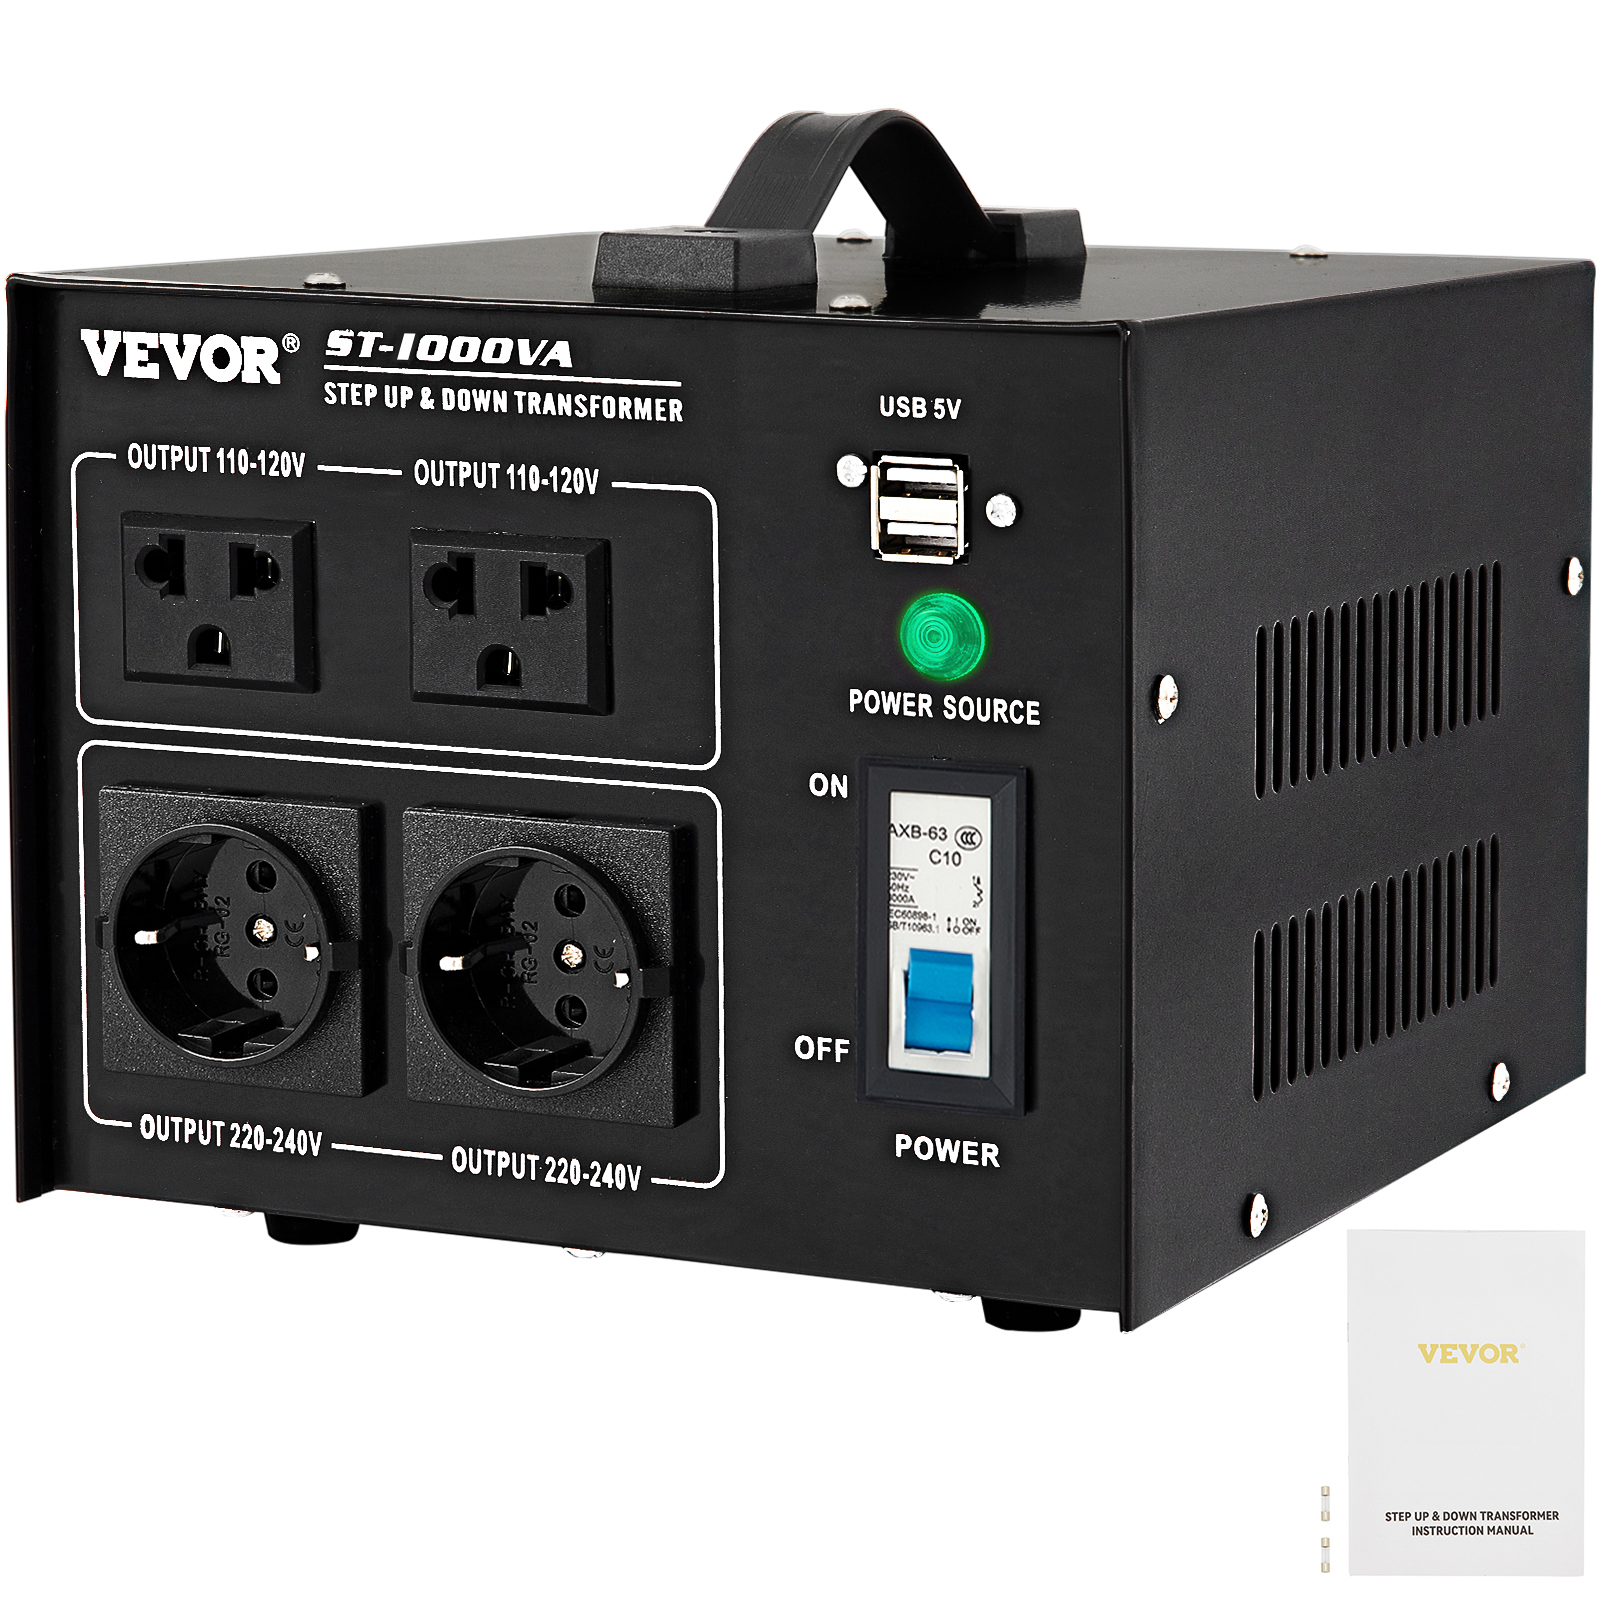 VEVOR 500VA Variable Transformer 110V 60Hz Input Voltage Digital Display  0-130V Output Automatic Voltage Regulator for US Plug 